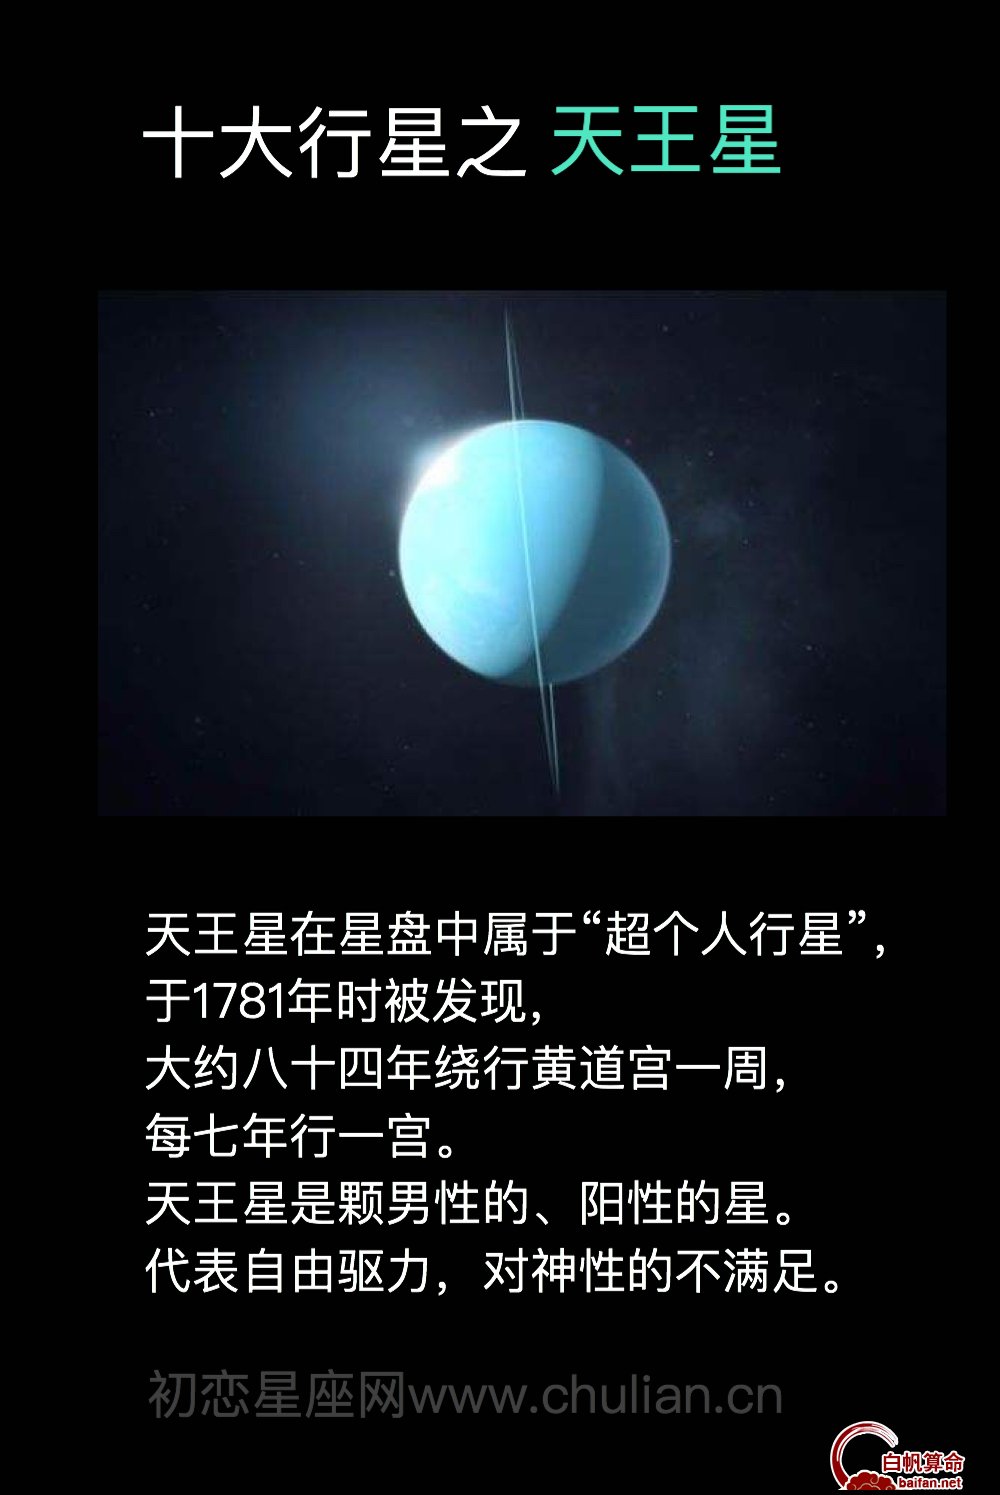 十大行星之天王星